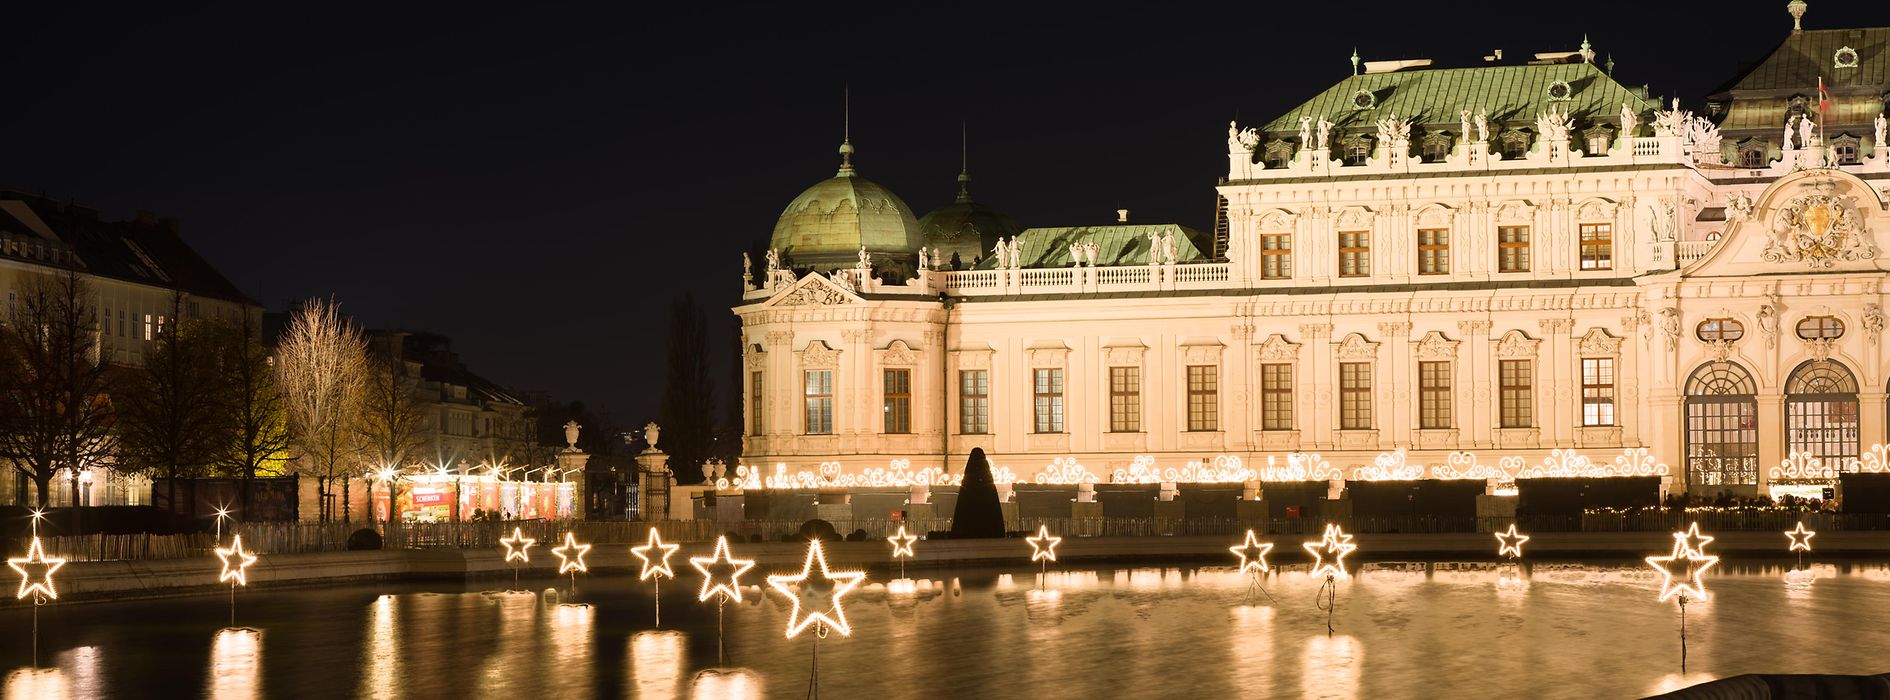 Palatul Belvedere, iluminat de Crăciun